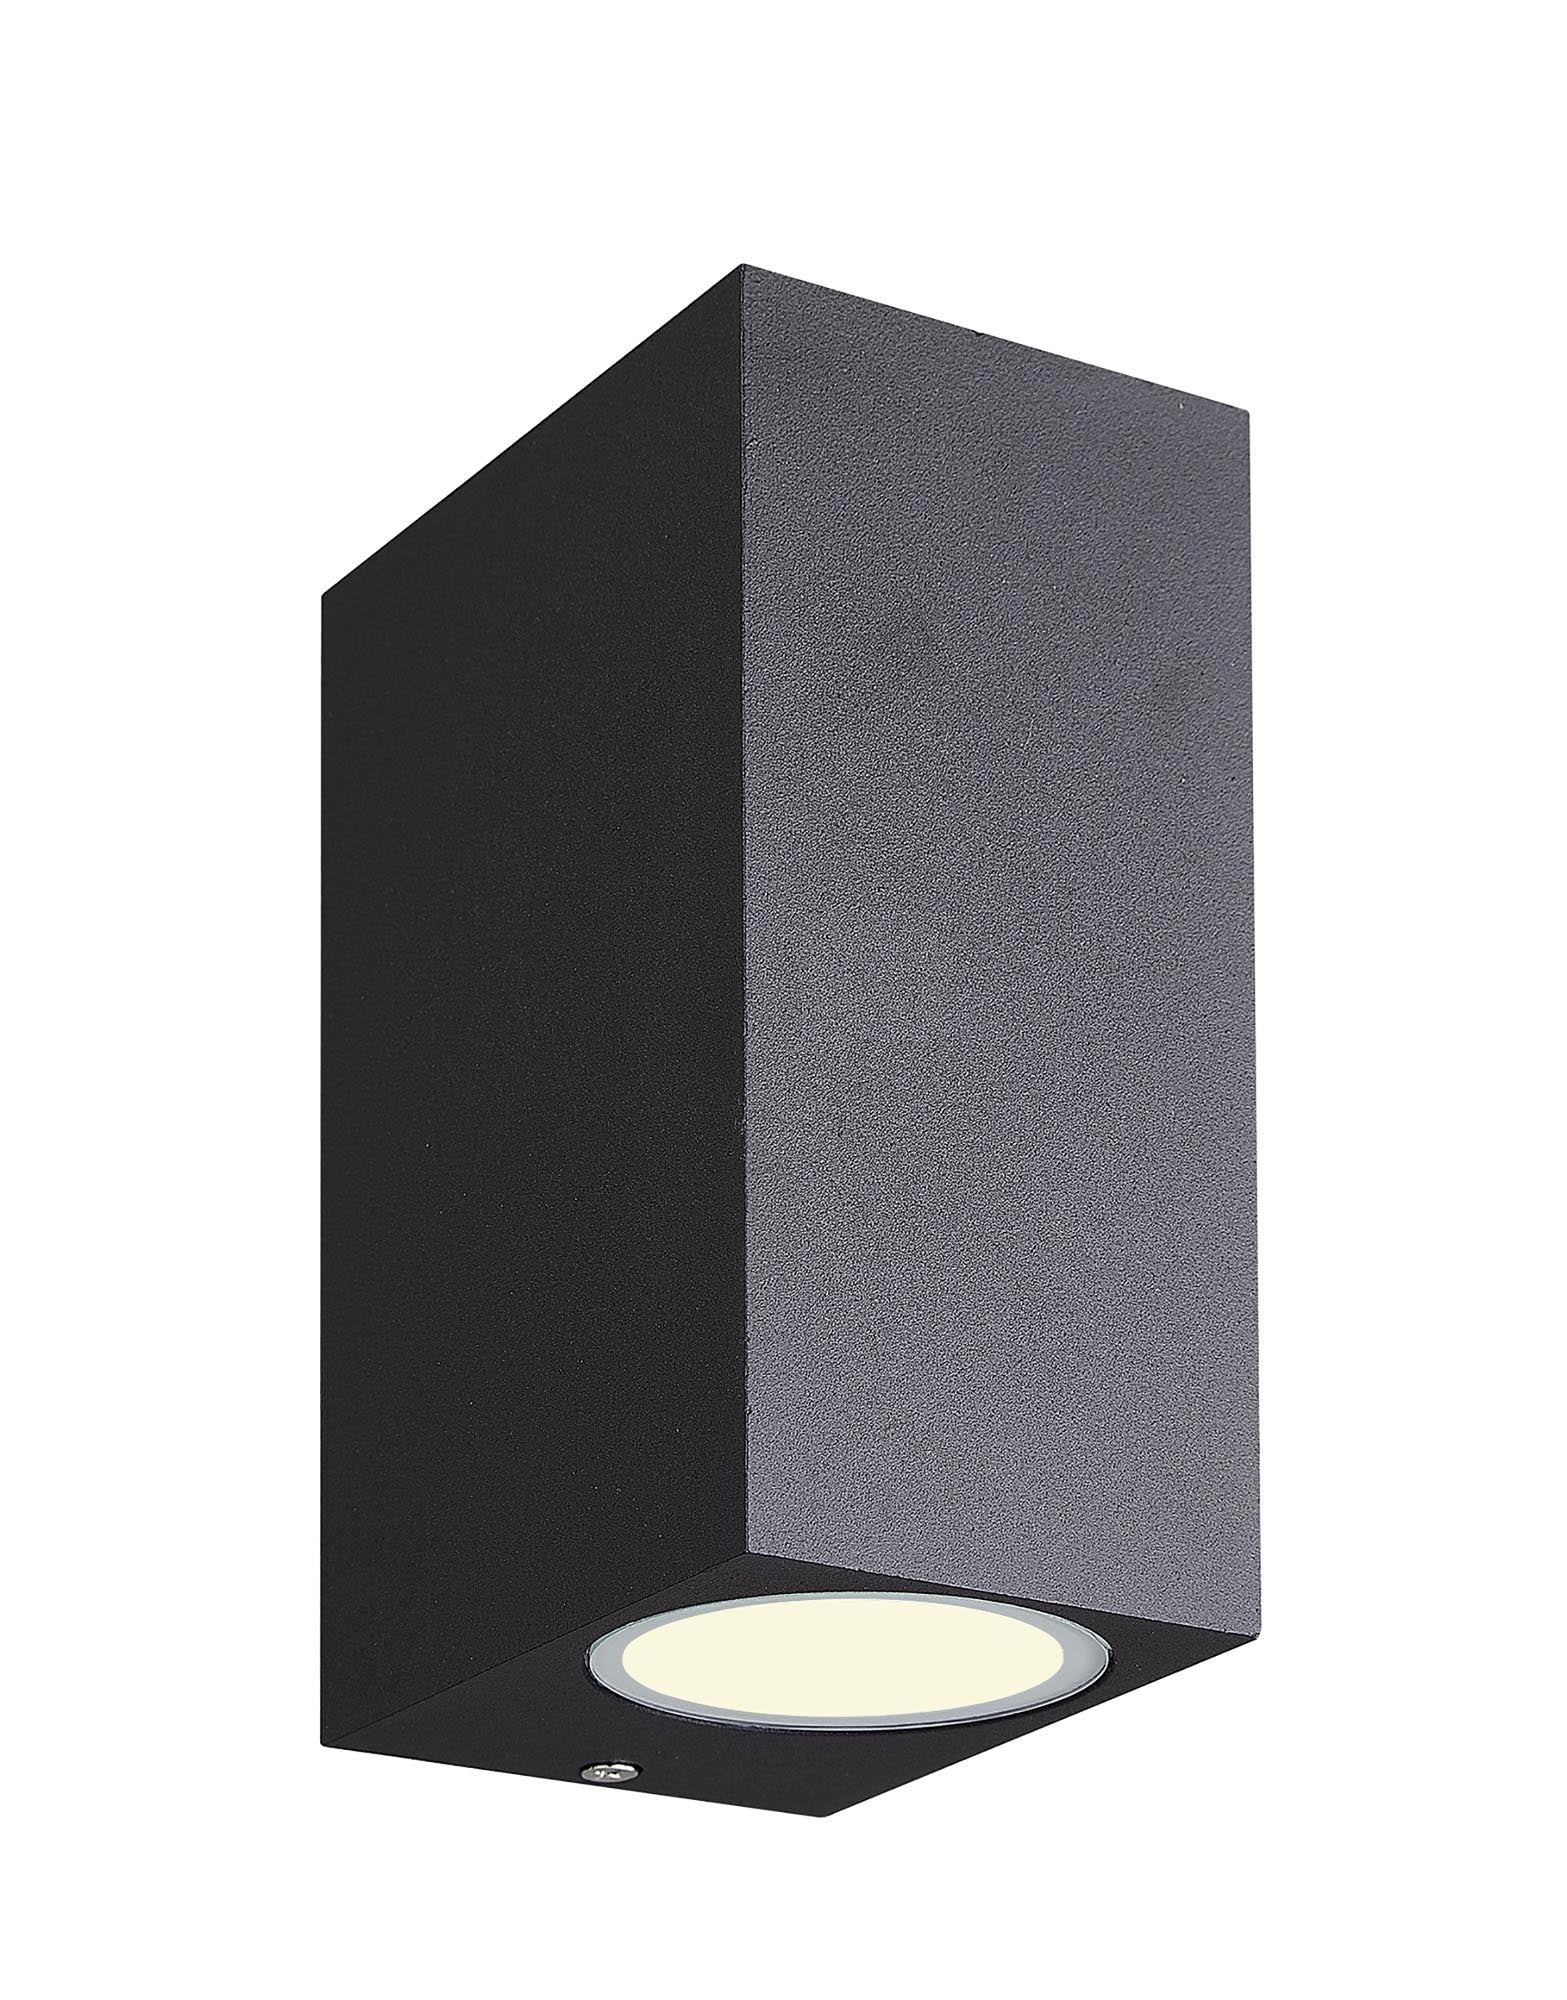 Kandanchu Round/Square Wall Lamp, 2 x GU10, IP54